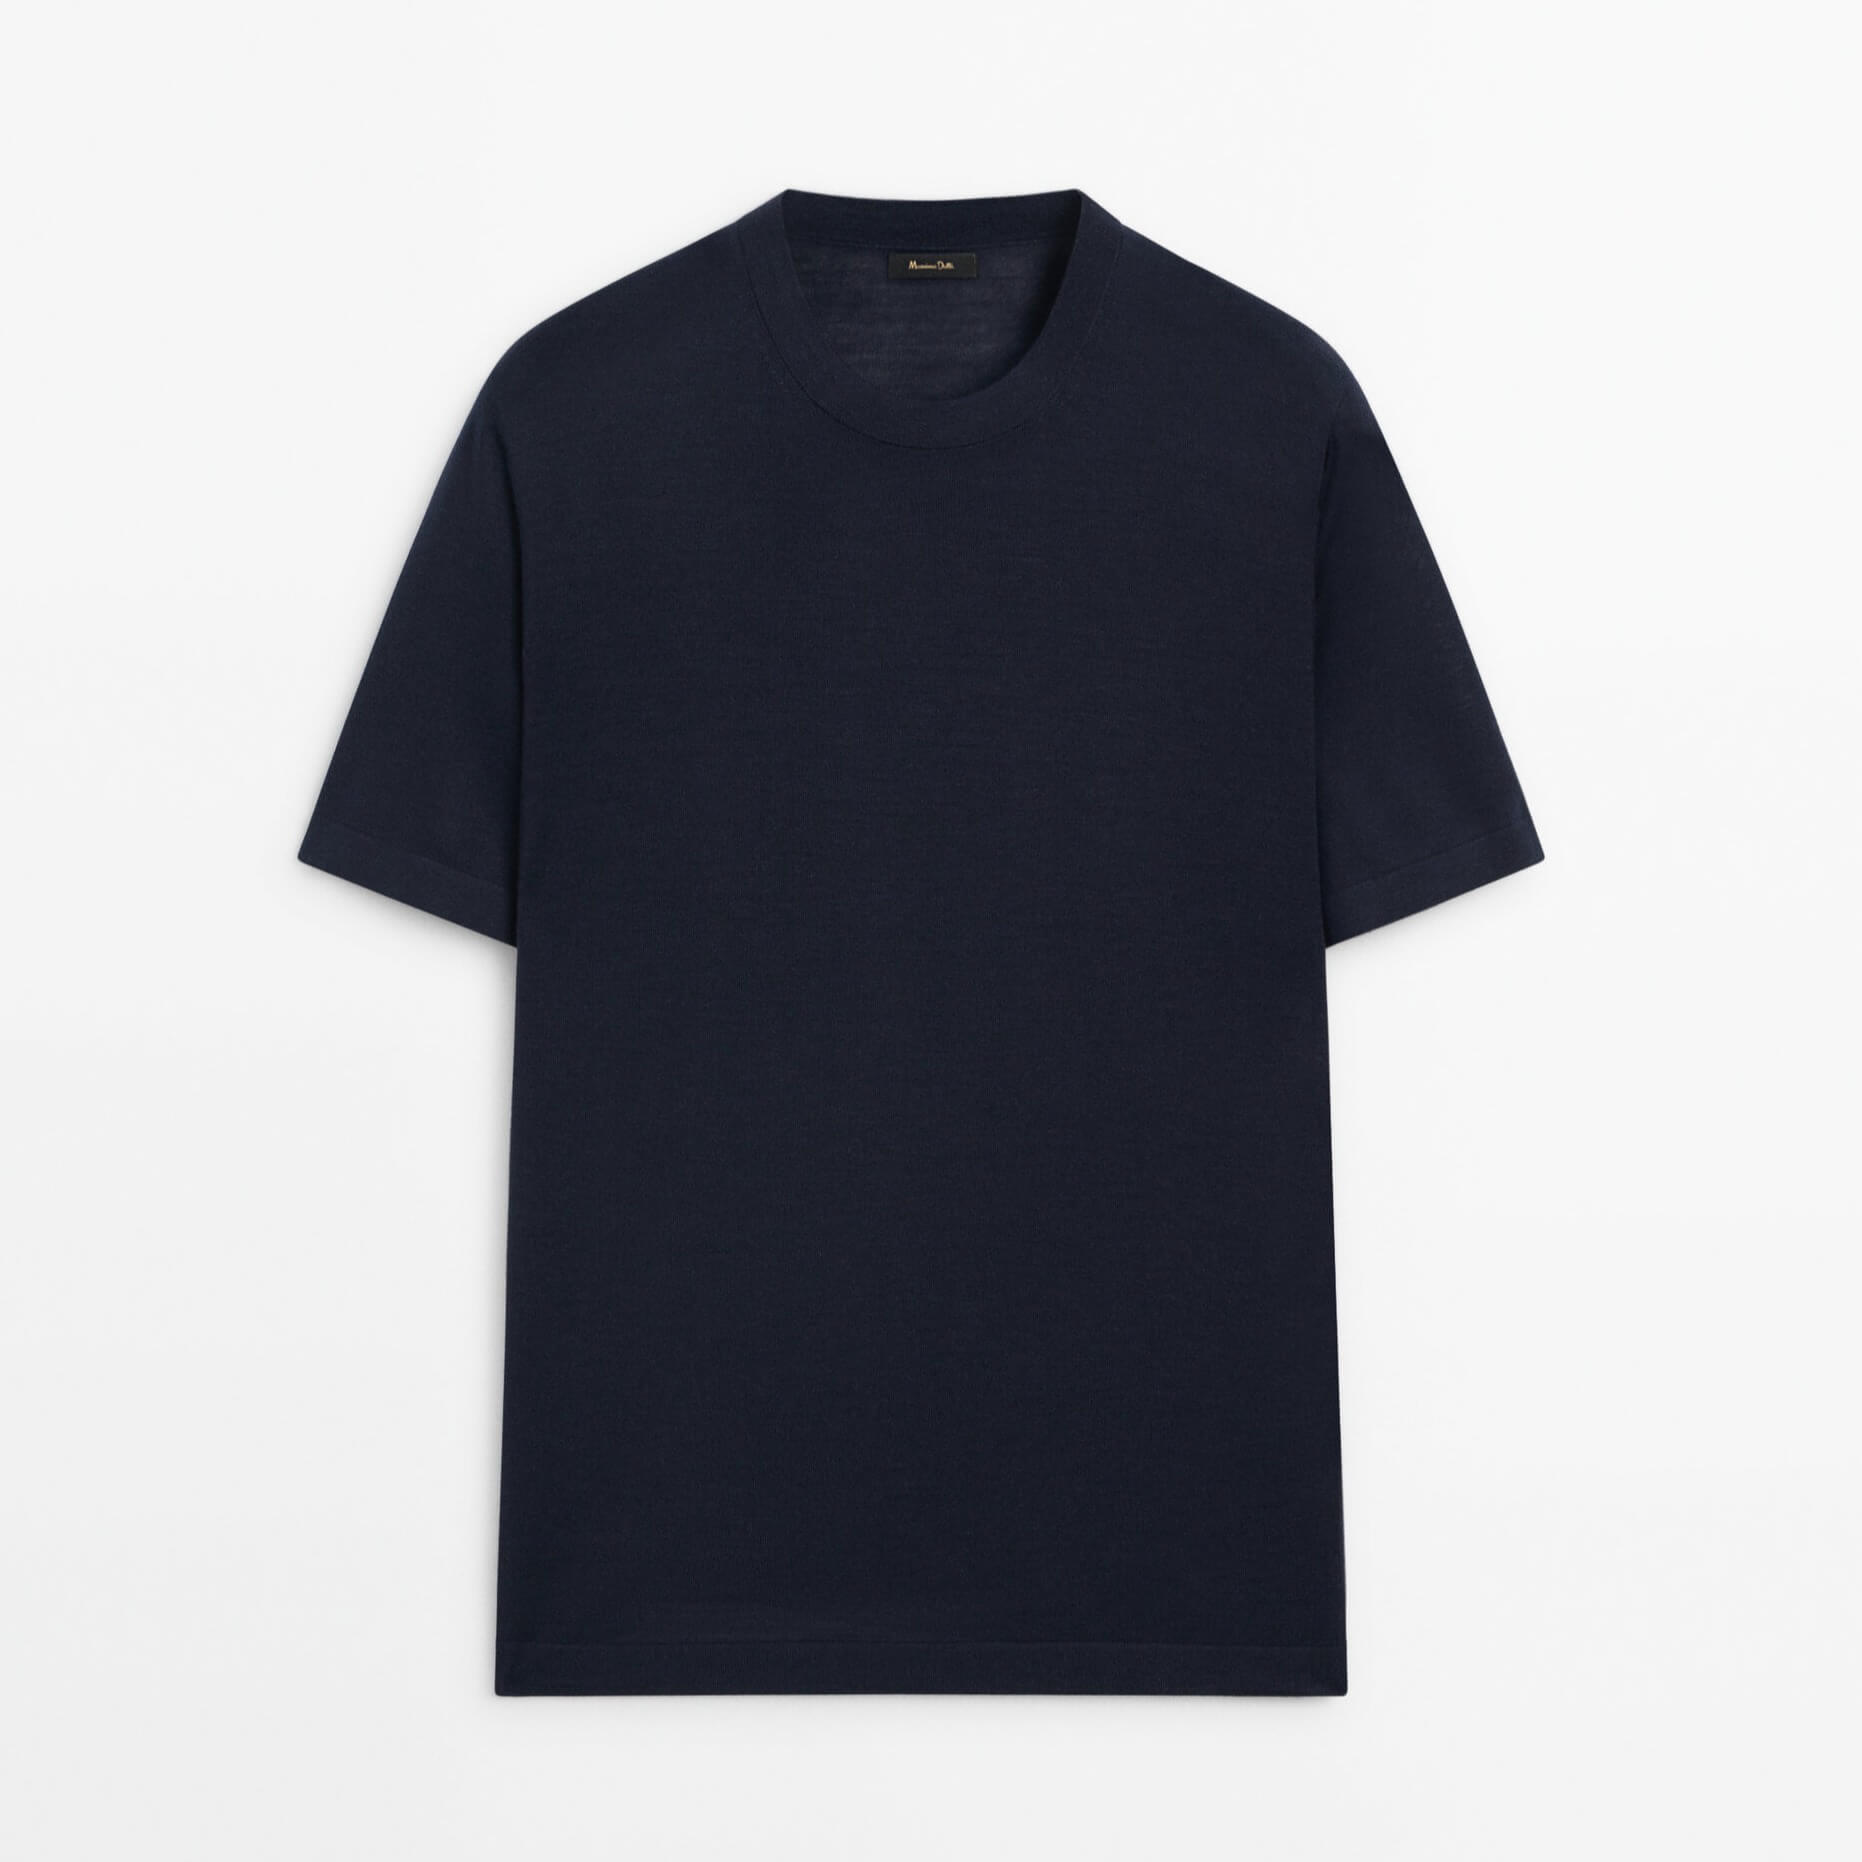 Футболка Massimo Dutti Short Sleeve Wool Blend, темно-синий кофта вязаная с коротким рукавом 42 44 размер